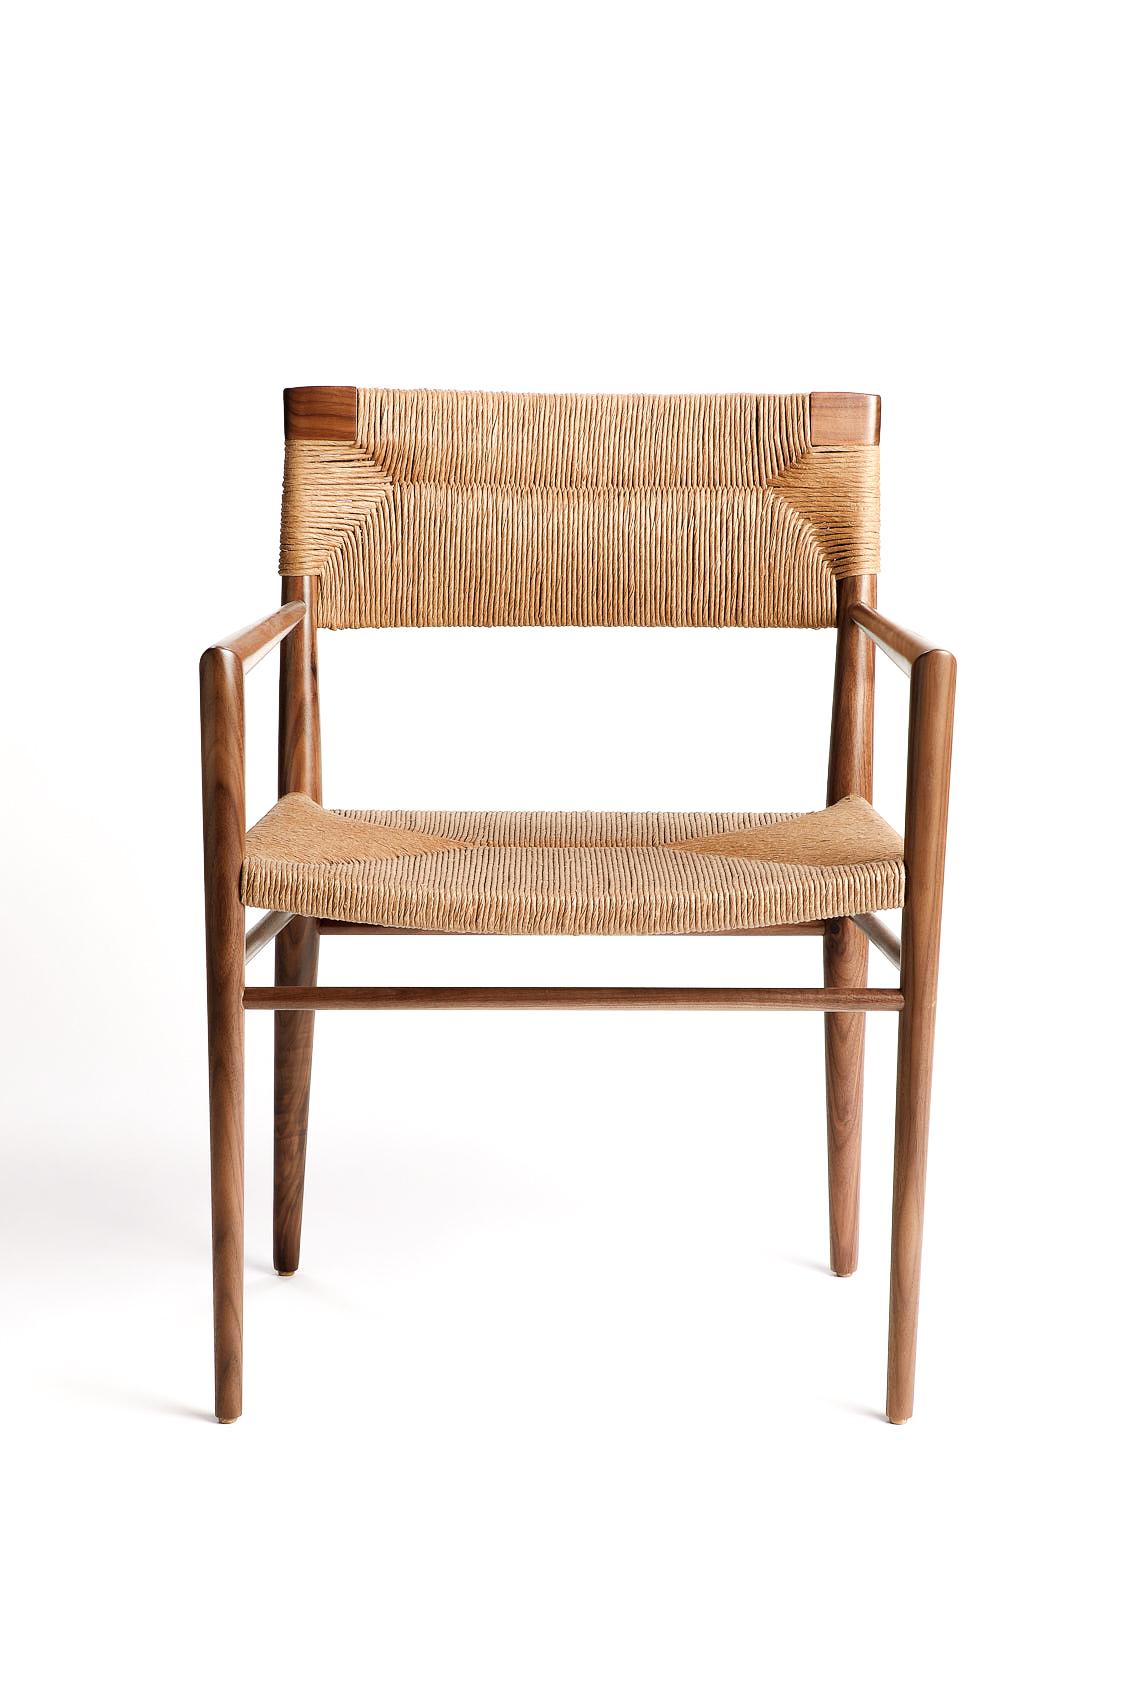 Der ursprünglich 1956 von Mel Smilow entworfene und 2018 von seiner Tochter Judy Smilow offiziell wieder eingeführte Esstischsessel mit geflochtenem Binsenrücken ist ein klassischer Midcentury-Sessel. Die handgeflochtene Sitzfläche und der